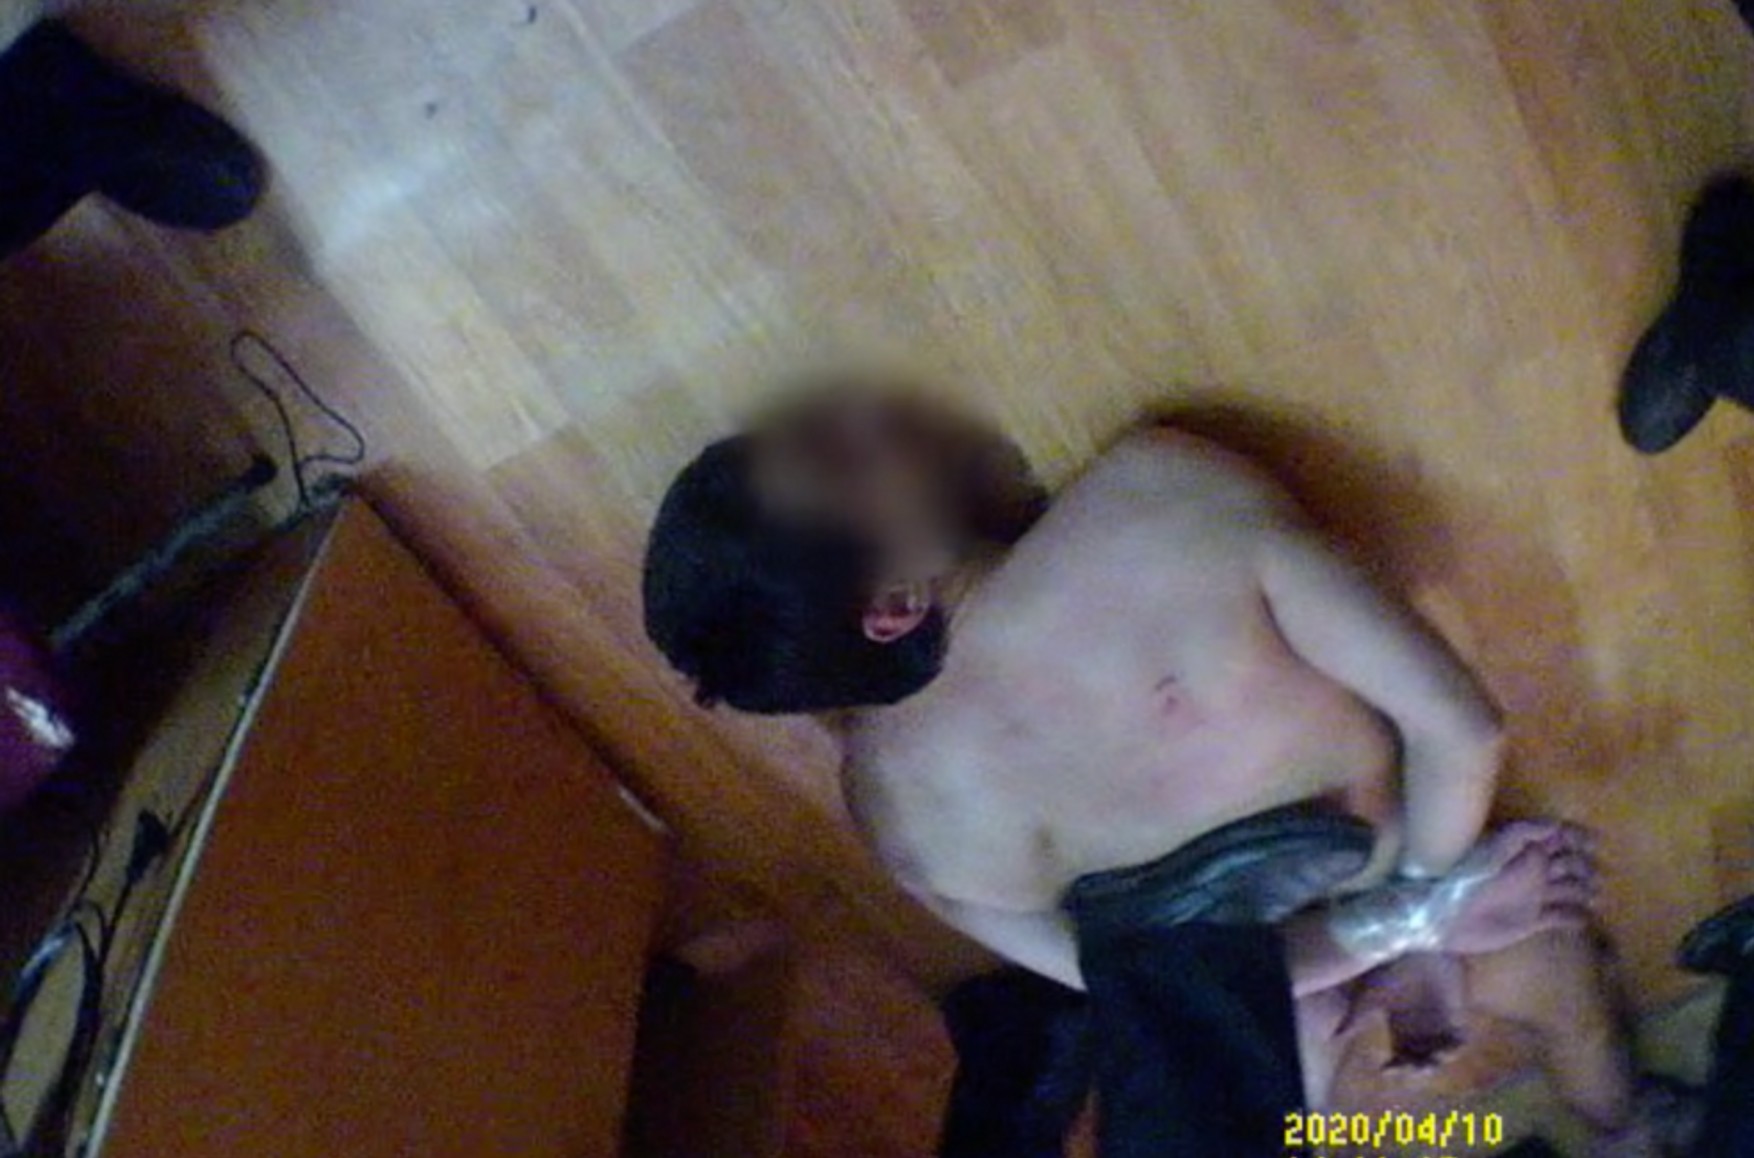 Gulagu.net опублікував відео зґвалтувань ув'язнених в саратовській тюремній лікарні